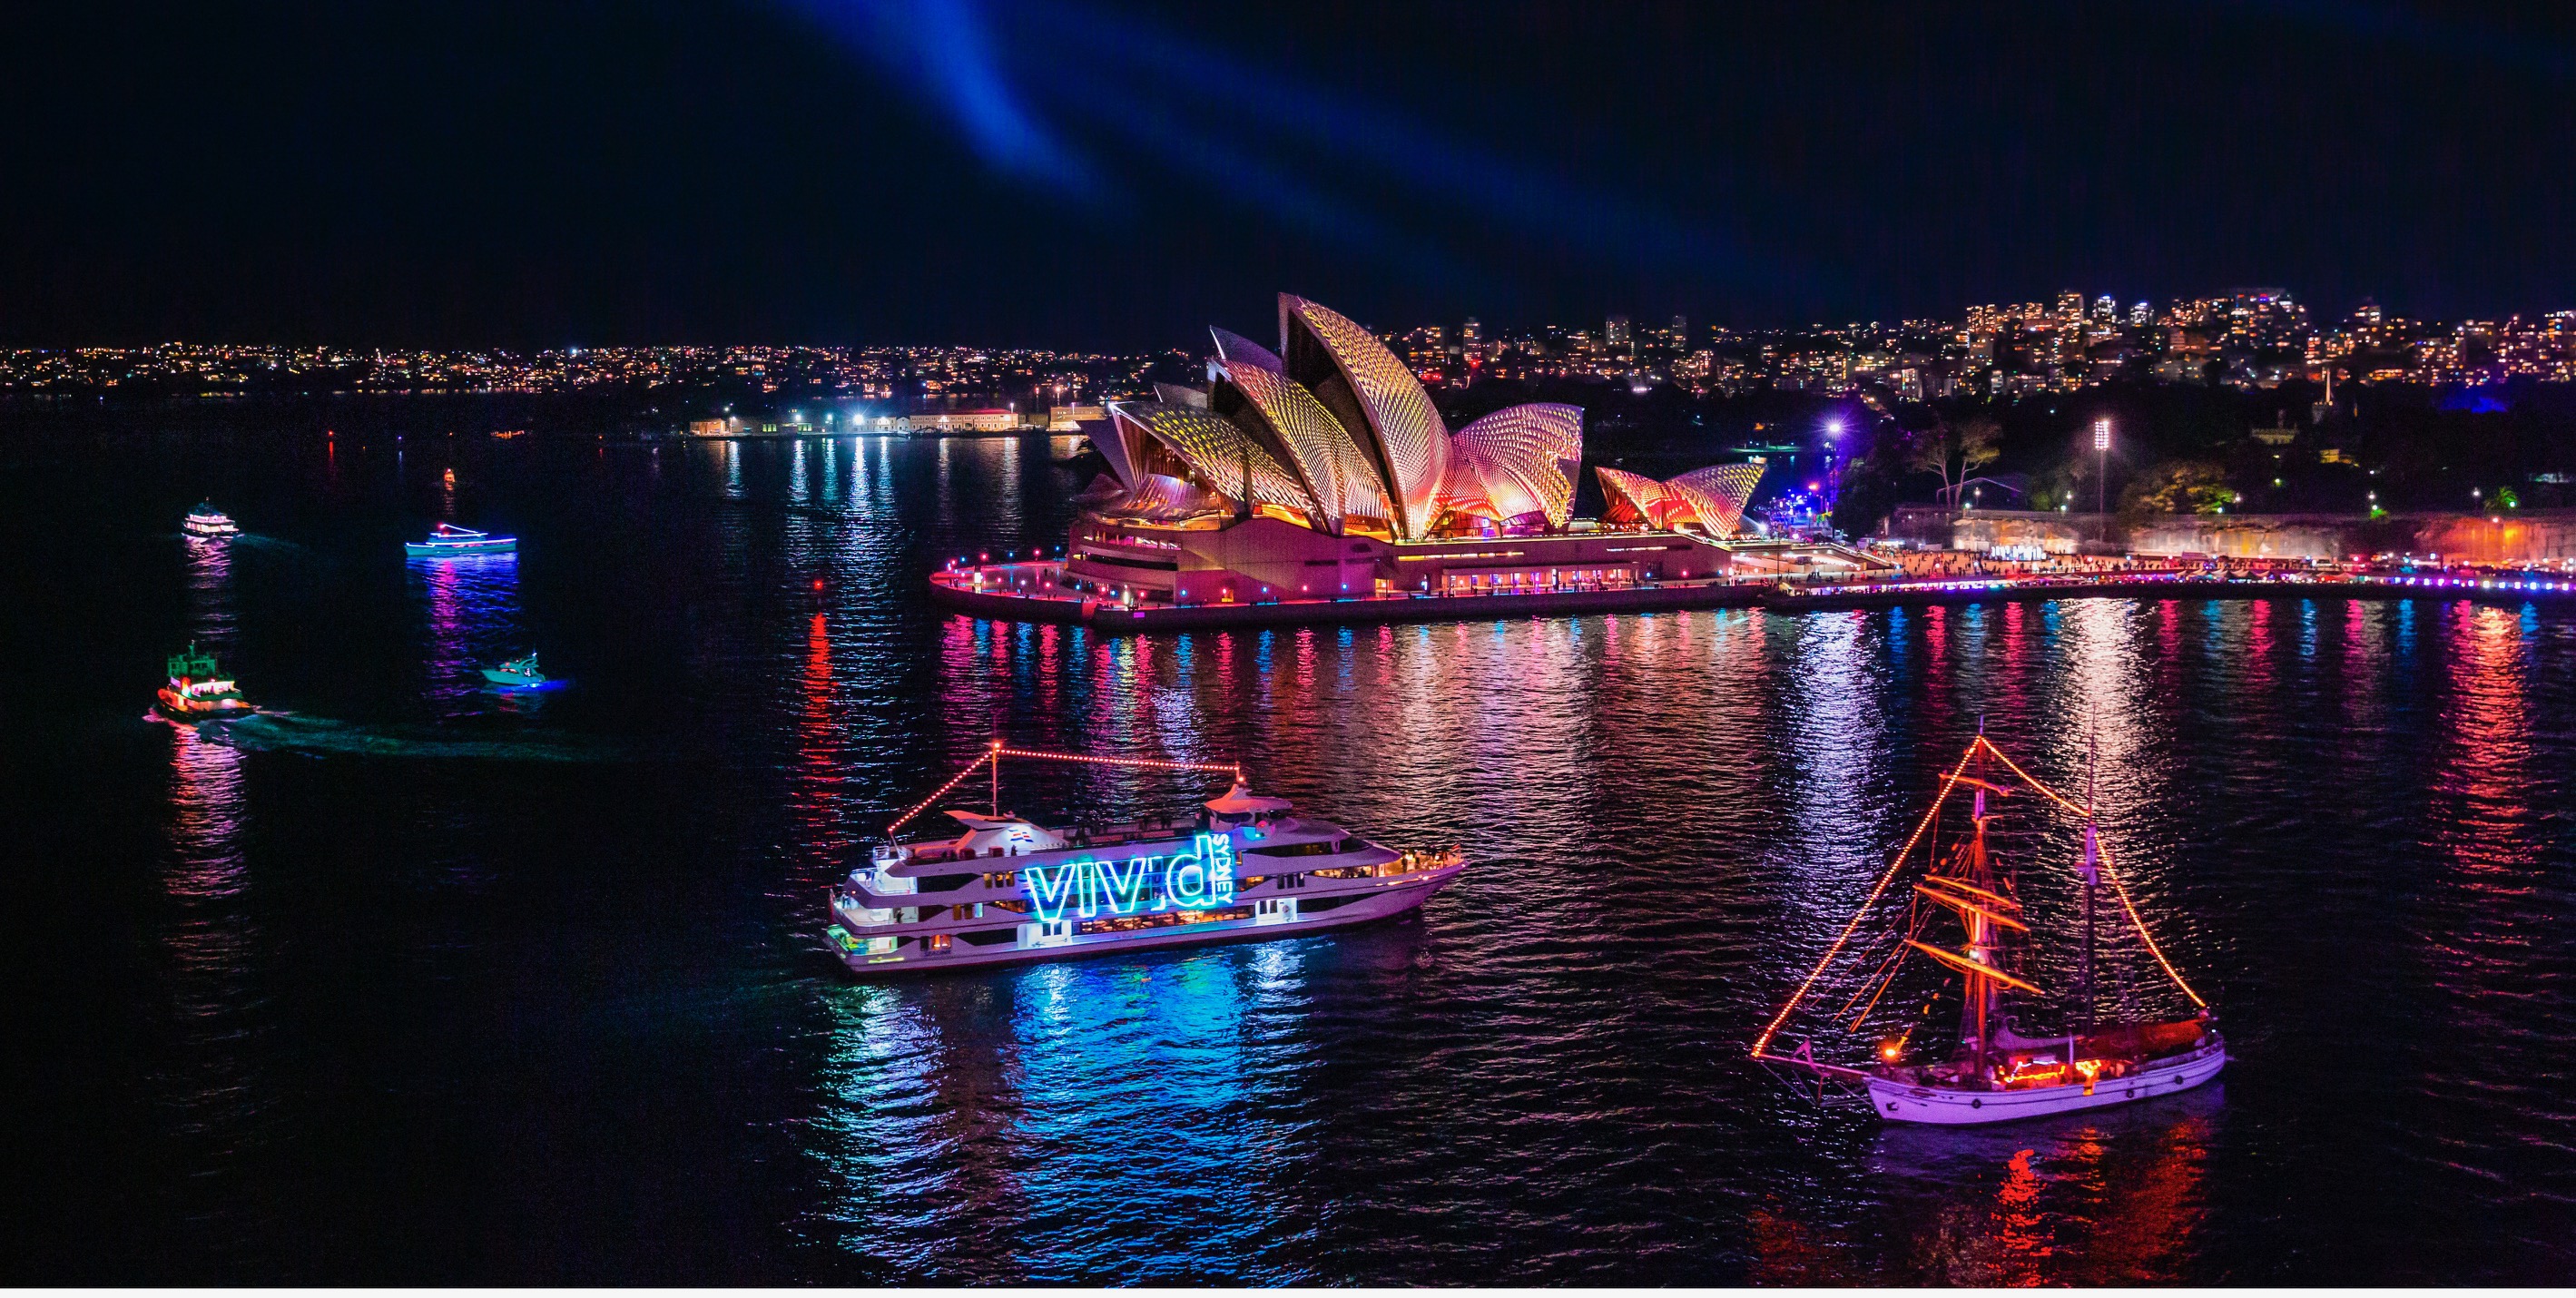 Ingin Jelajahi Australia? Yuk Wisata ke Festival Vivid Sydney 2022!